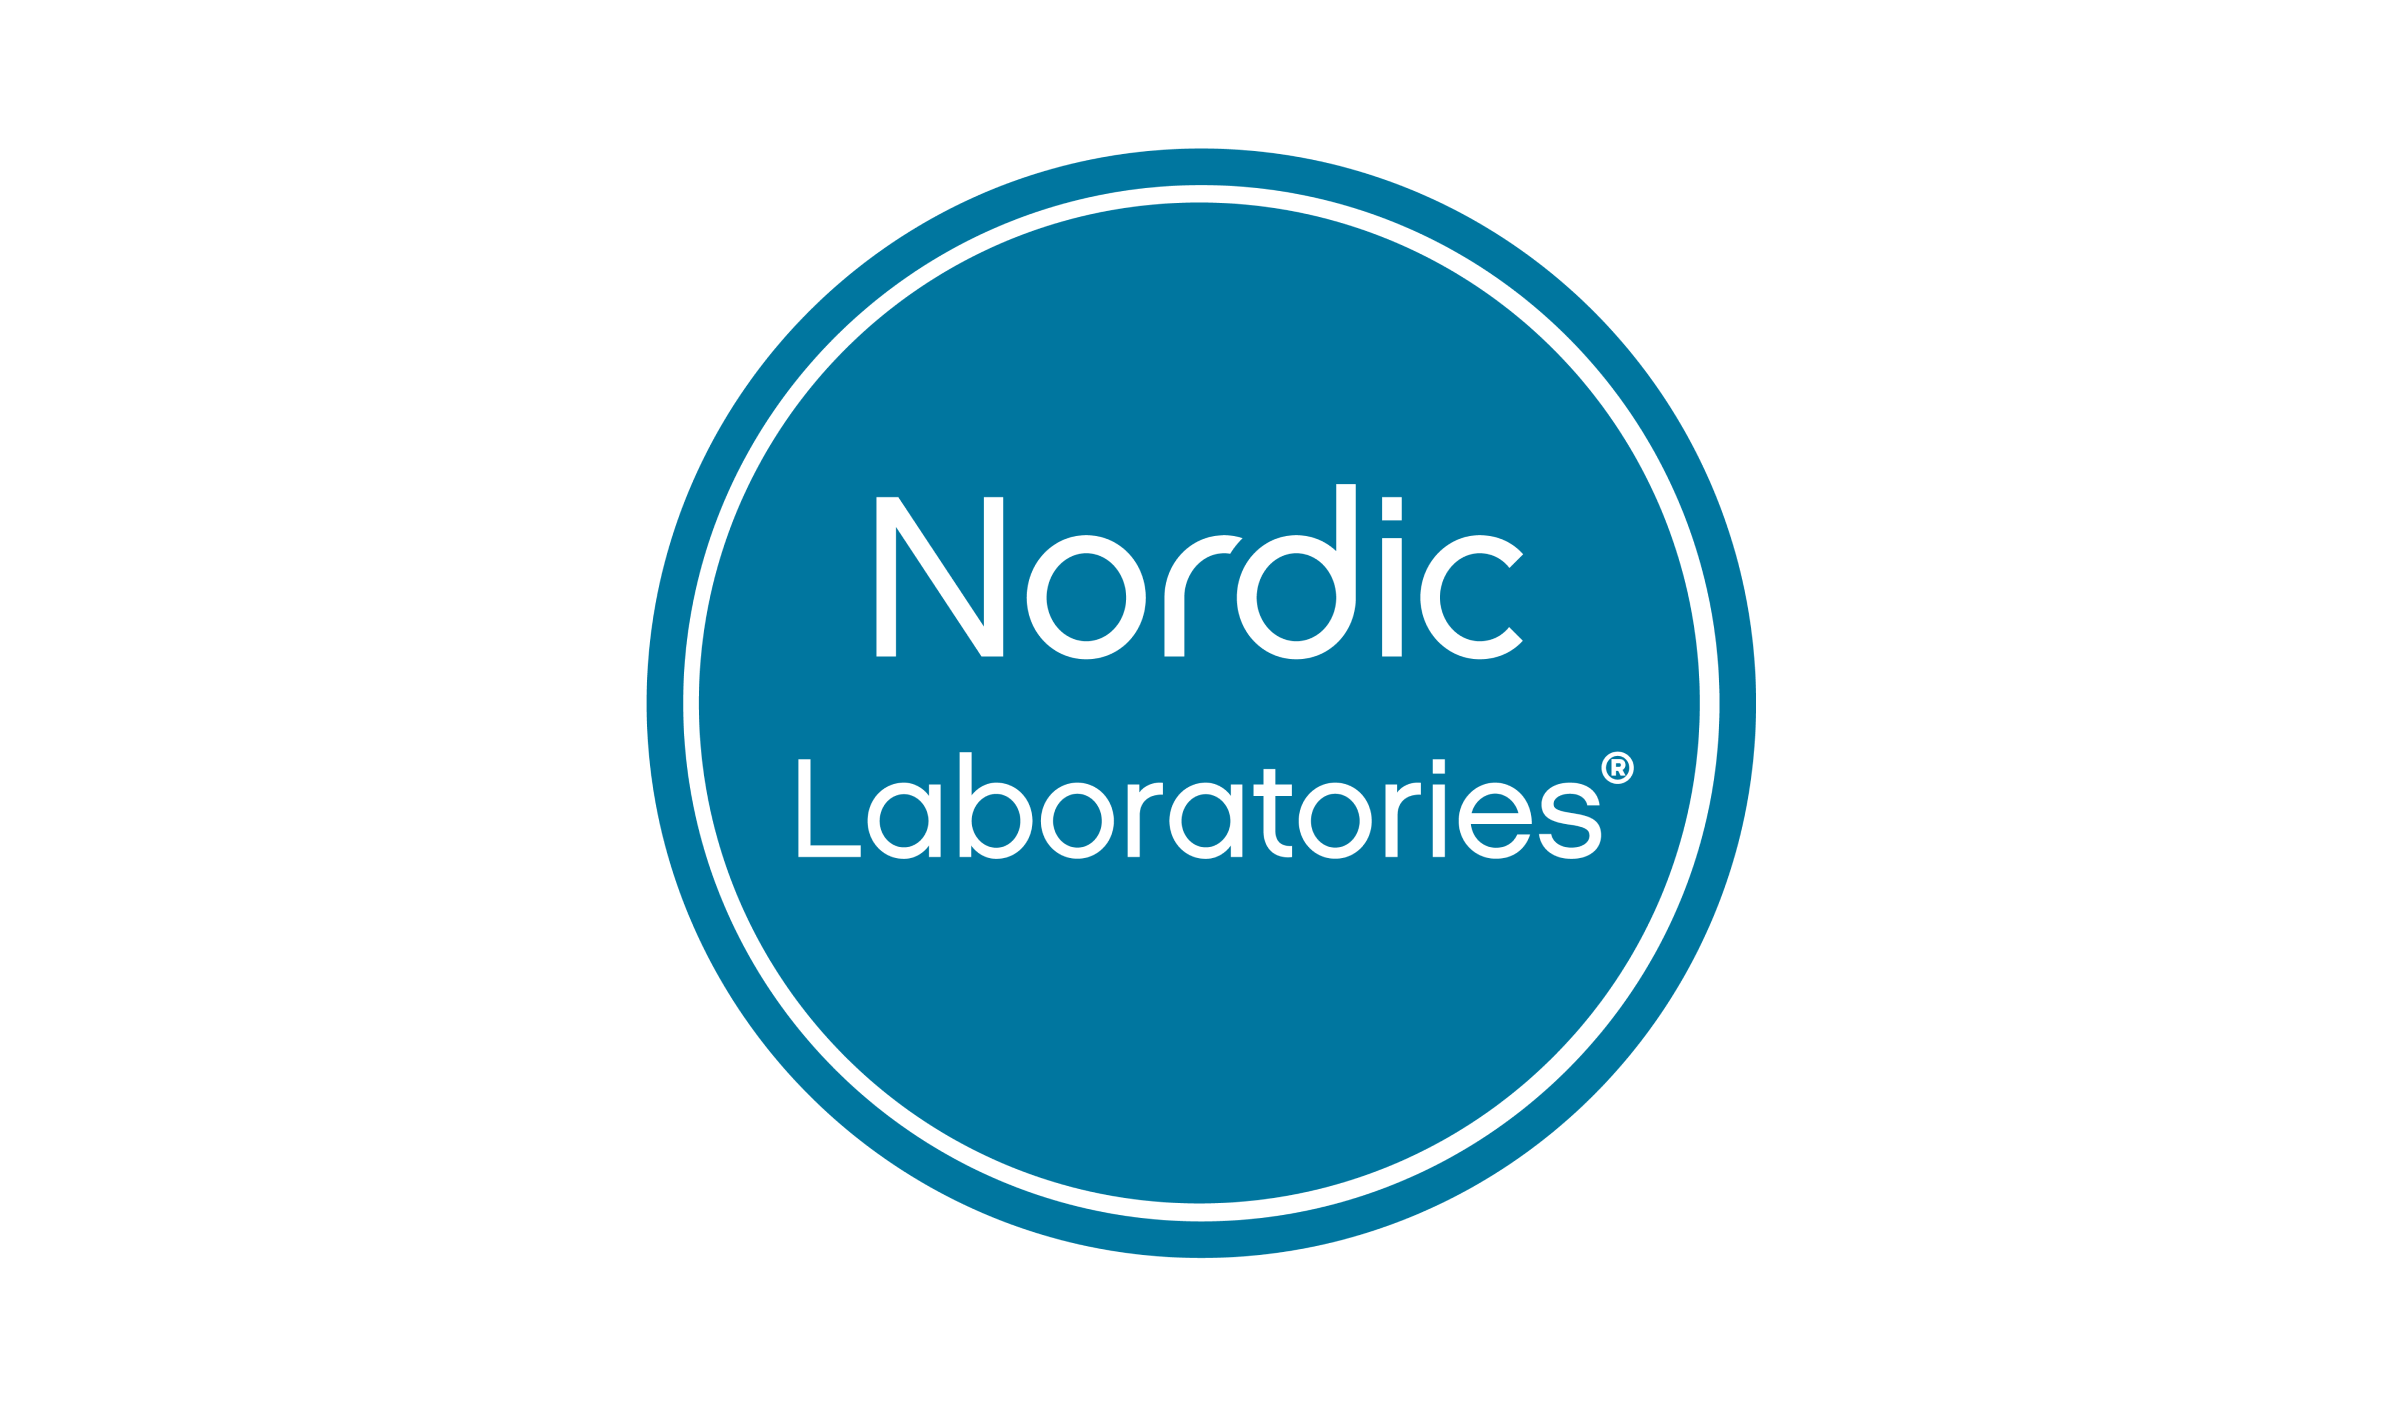 Nordic Laboratories